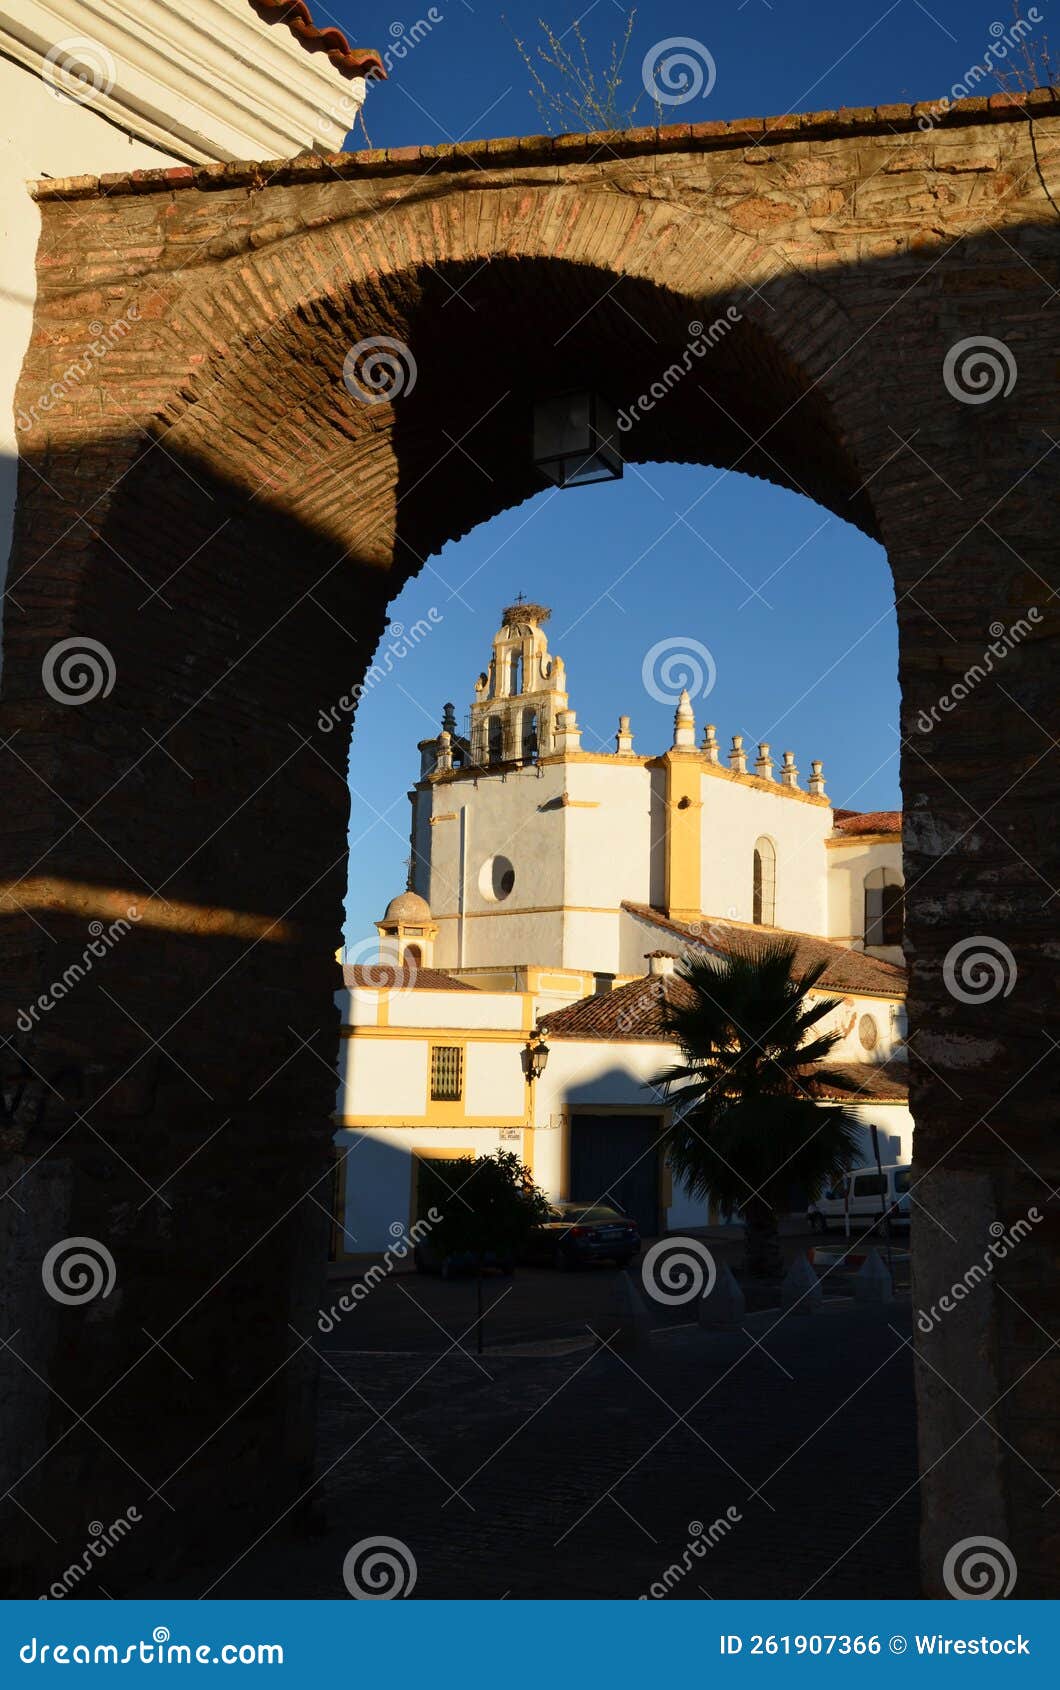 vertical shot of the historic arco del cubo de zafra in badajoz, spain